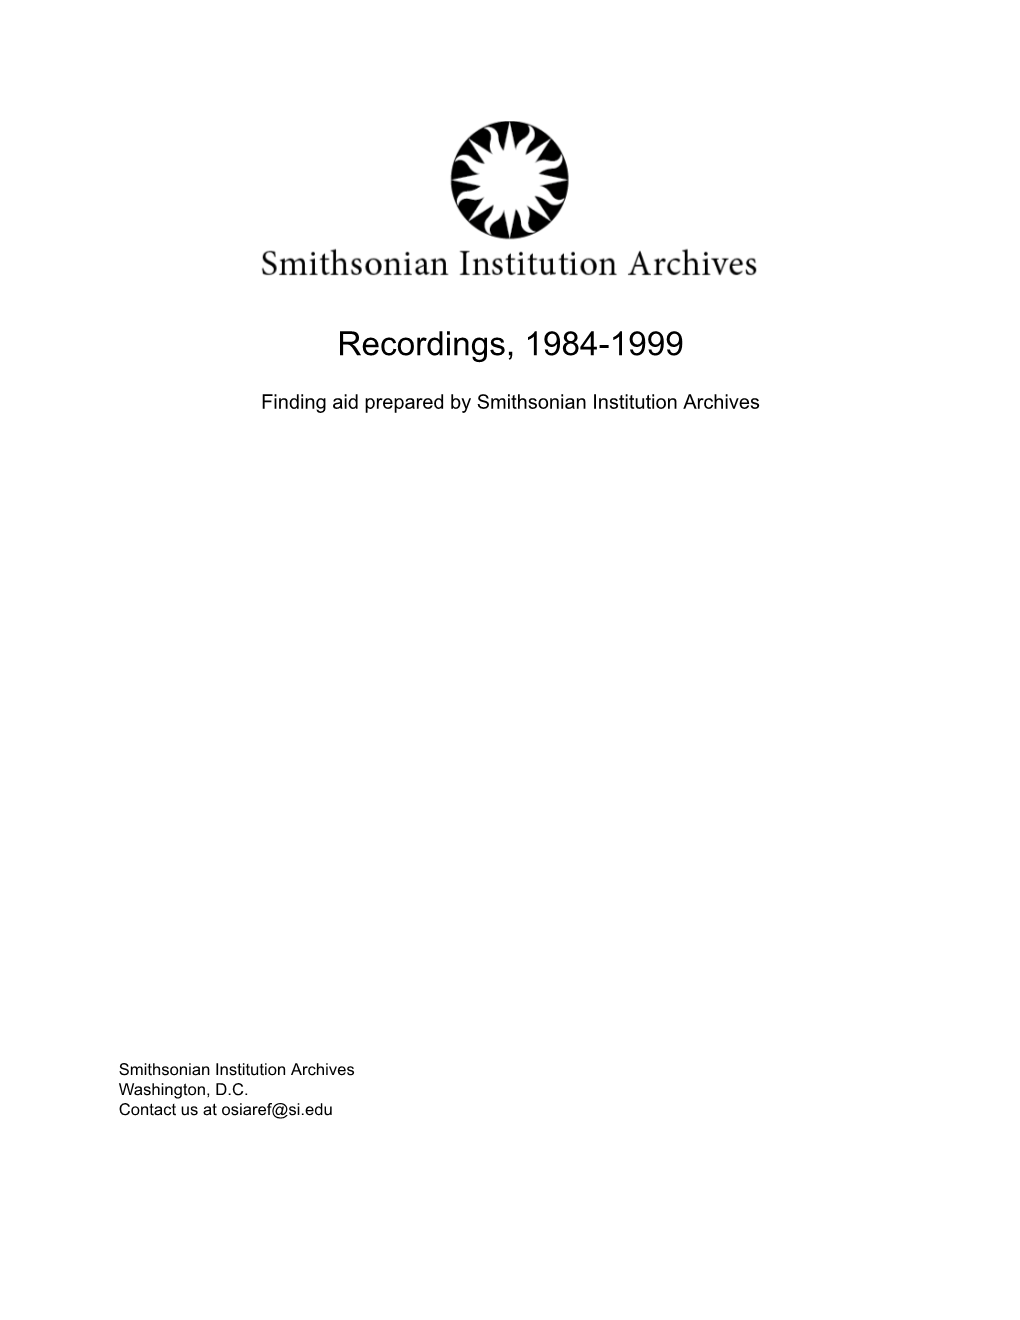 Recordings, 1984-1999